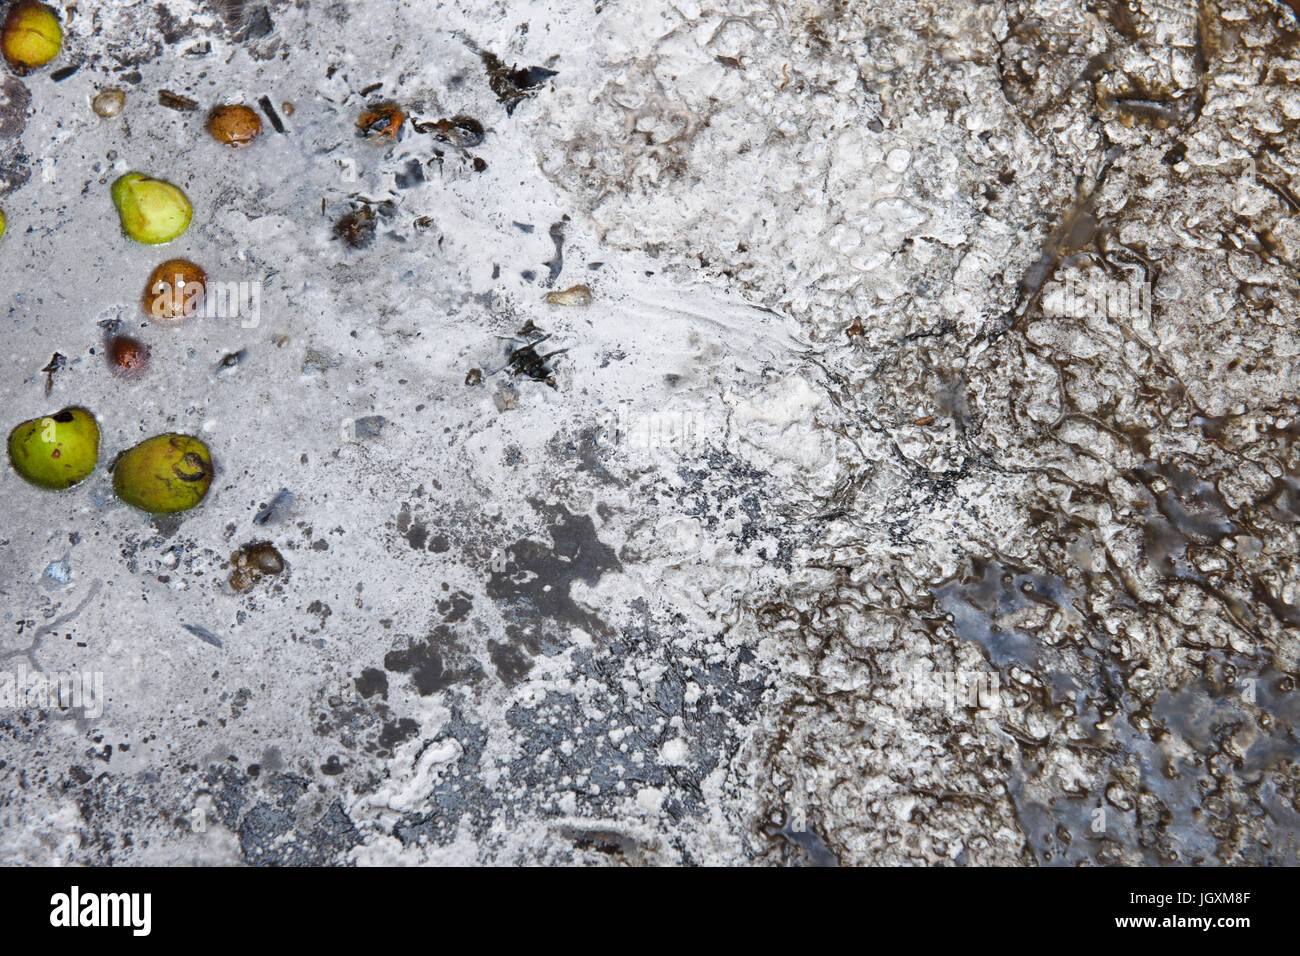 Eine Schicht von Grauschimmel gebildet auf der Wasseroberfläche eines Lagerplatzes verwendet, um mehrjährige Garten Unkräuter zu ertränken. Alternative Methode des Entledigens mehrjährige Unkräuter. Stockfoto